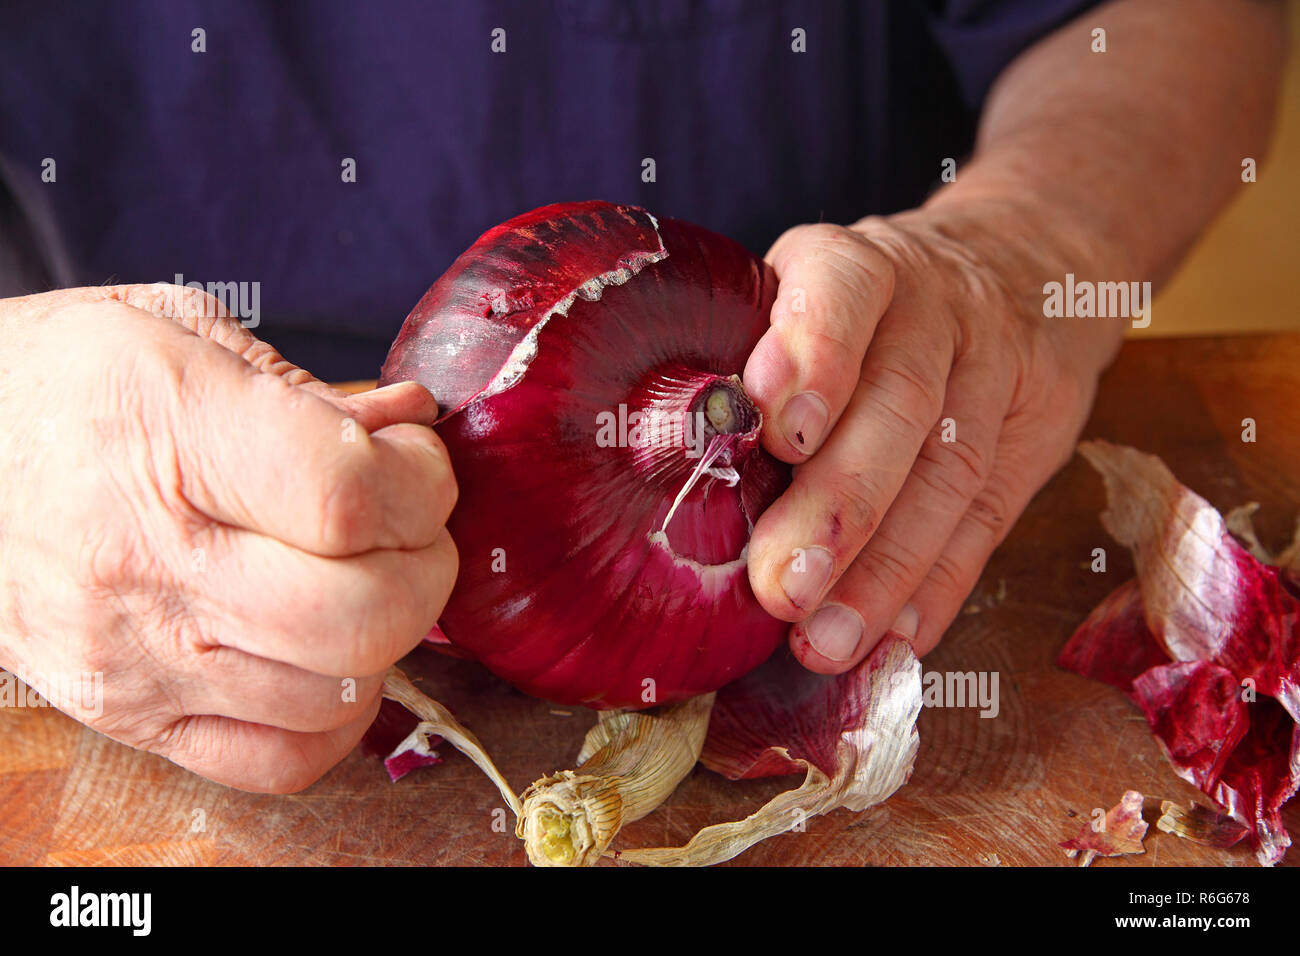 Eine rote Zwiebel schälen Stockfotografie - Alamy